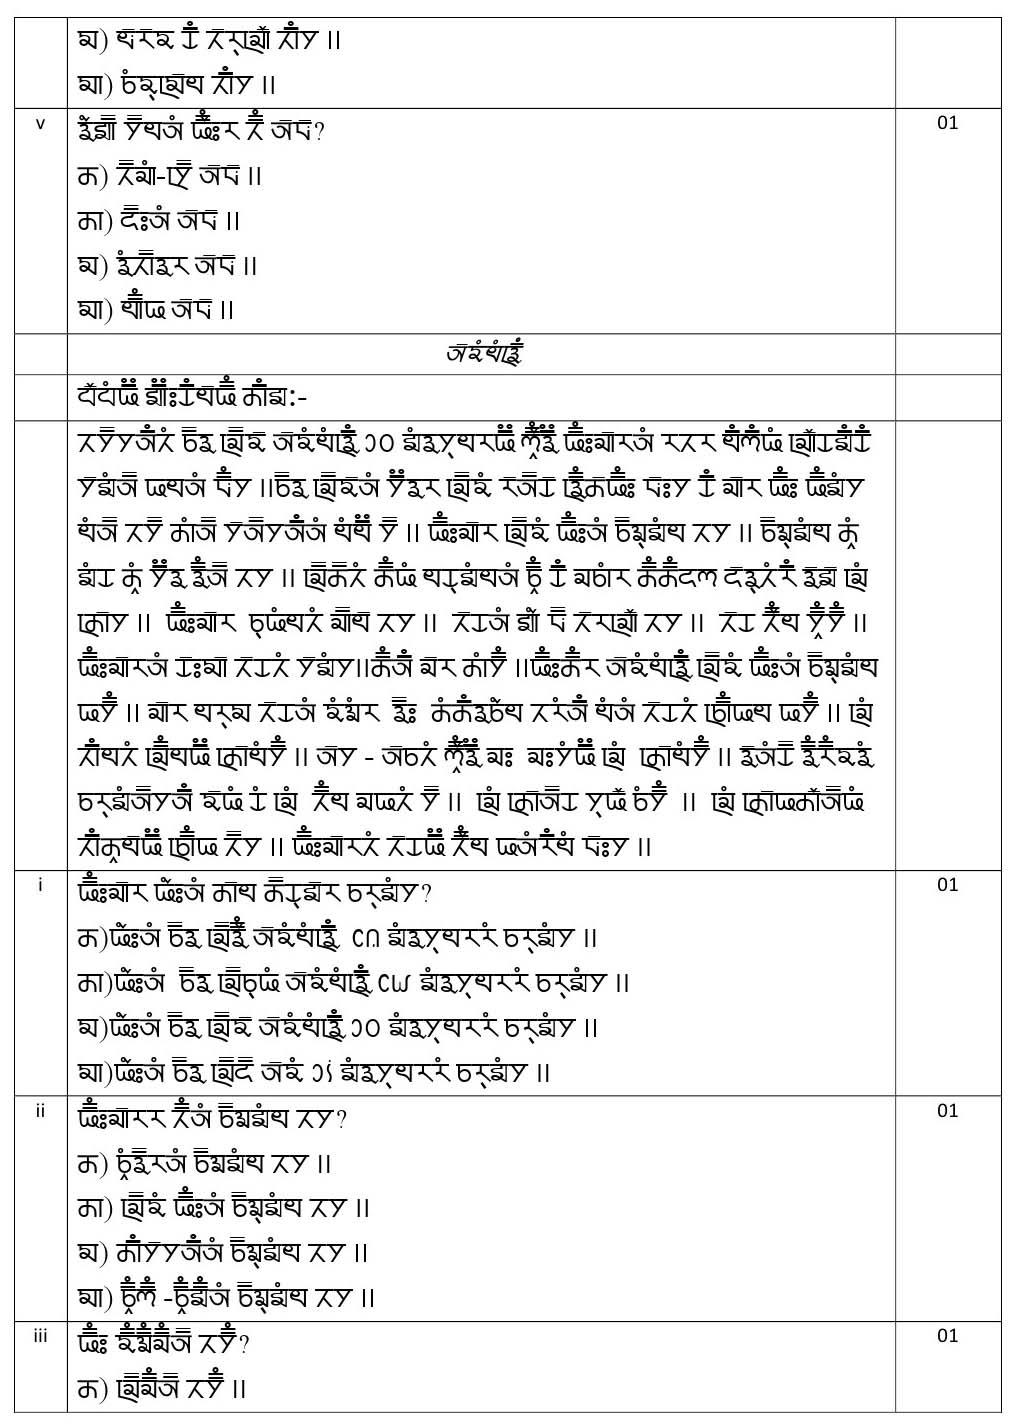 Gurung CBSE Class X Sample Question Paper 2020 21 - Image 5